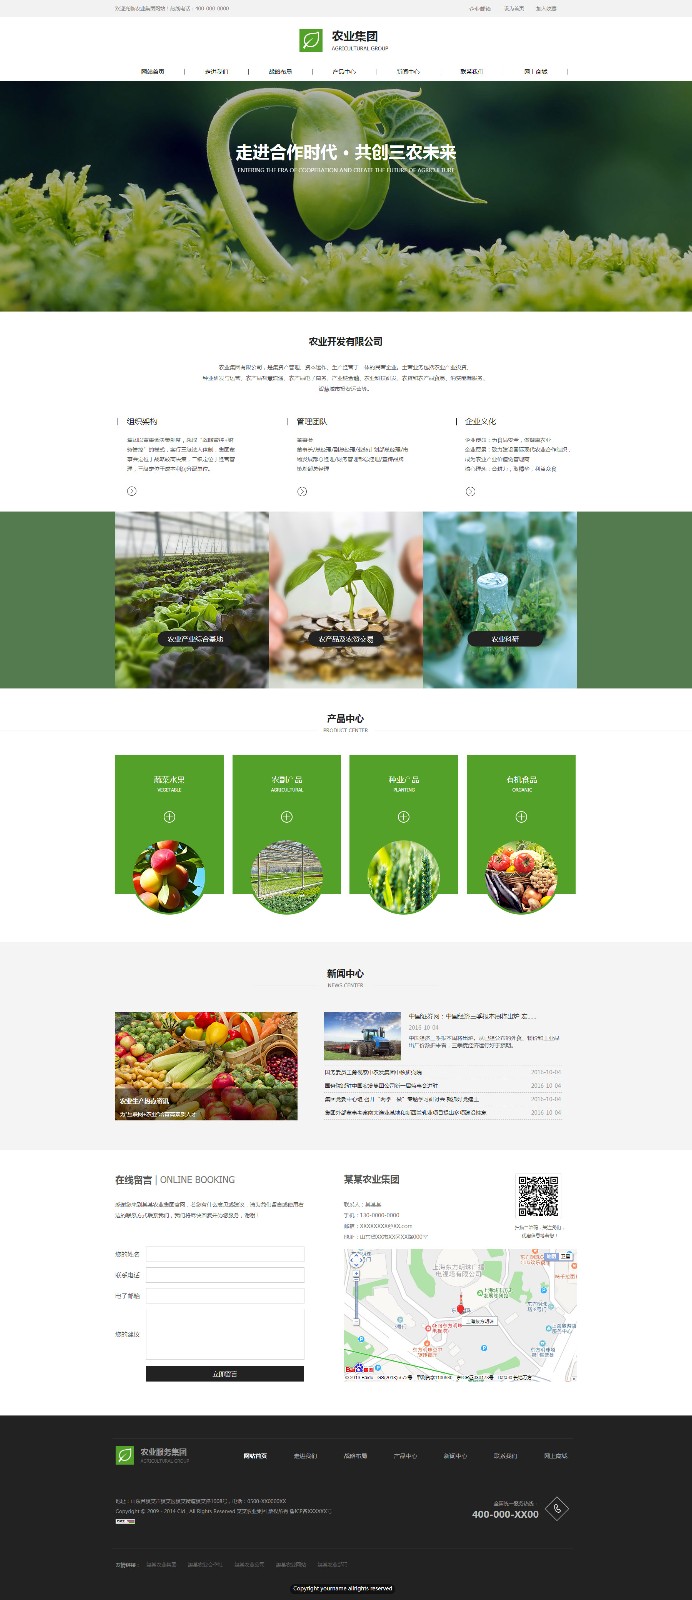 企业网站精美模板-agriculture-455